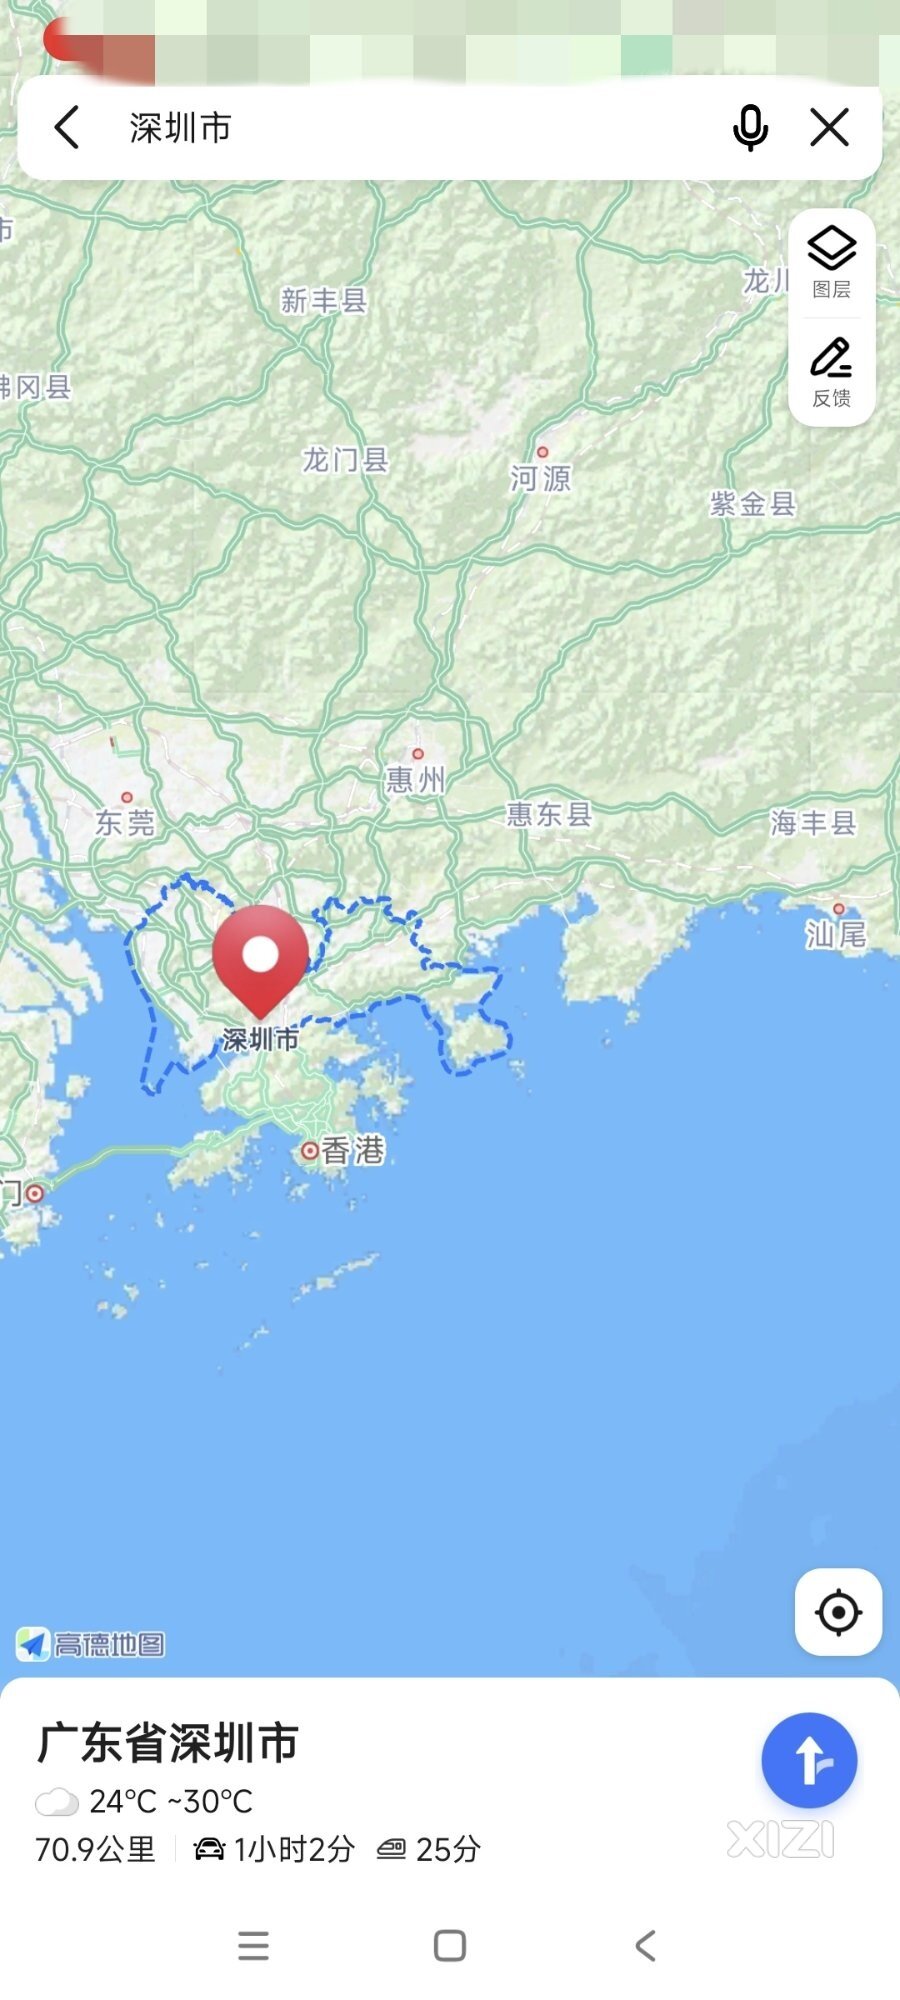 高德百度腾讯地图深圳市，显示深圳地图目前范围暂时不包括深汕合作区